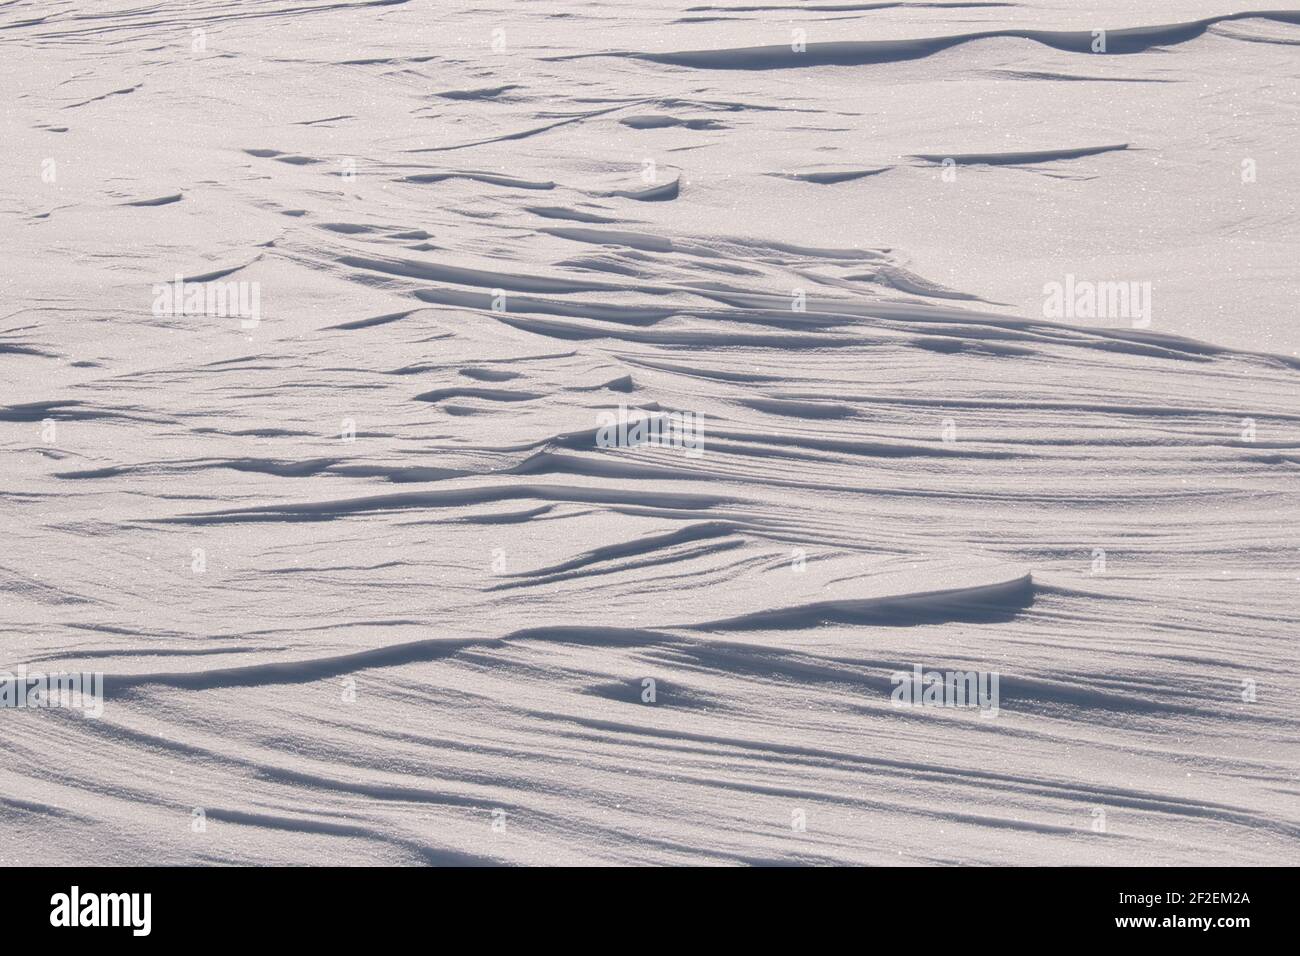 Patrones aleatorios en nieve blanca brillante creada por el viento Foto de stock